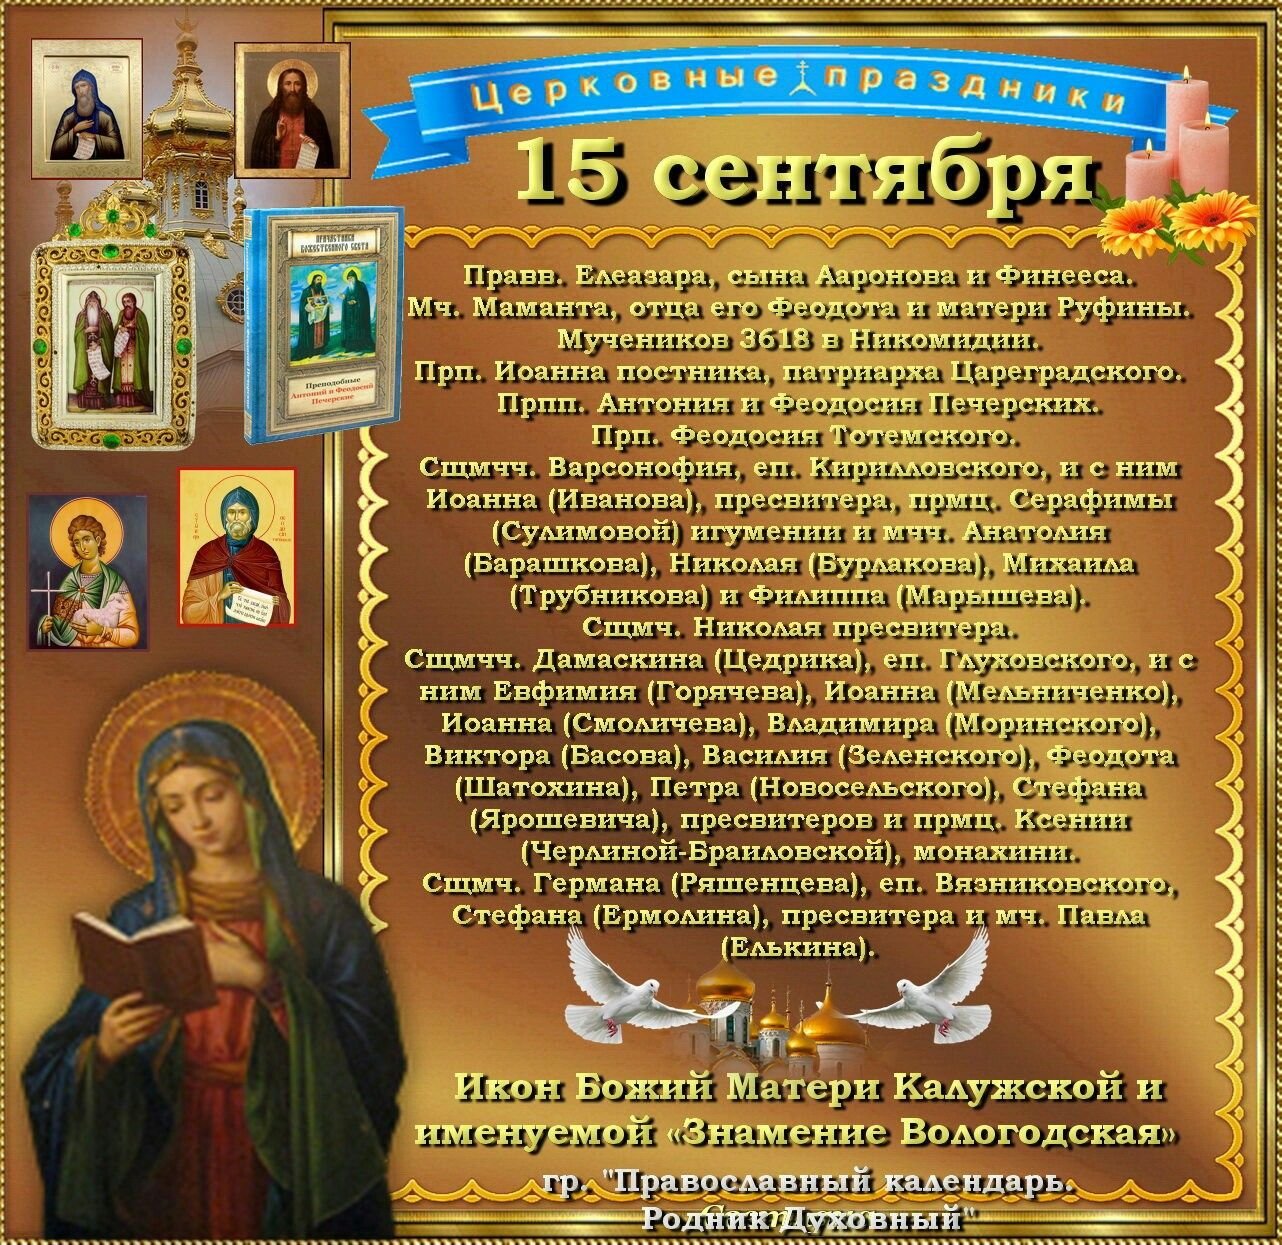 13 апреля православный календарь. 15 Сентября православный календарь. Православные праздники в сентябре. 15 Сентября праздник православный. Православный календарь на сентябрь.